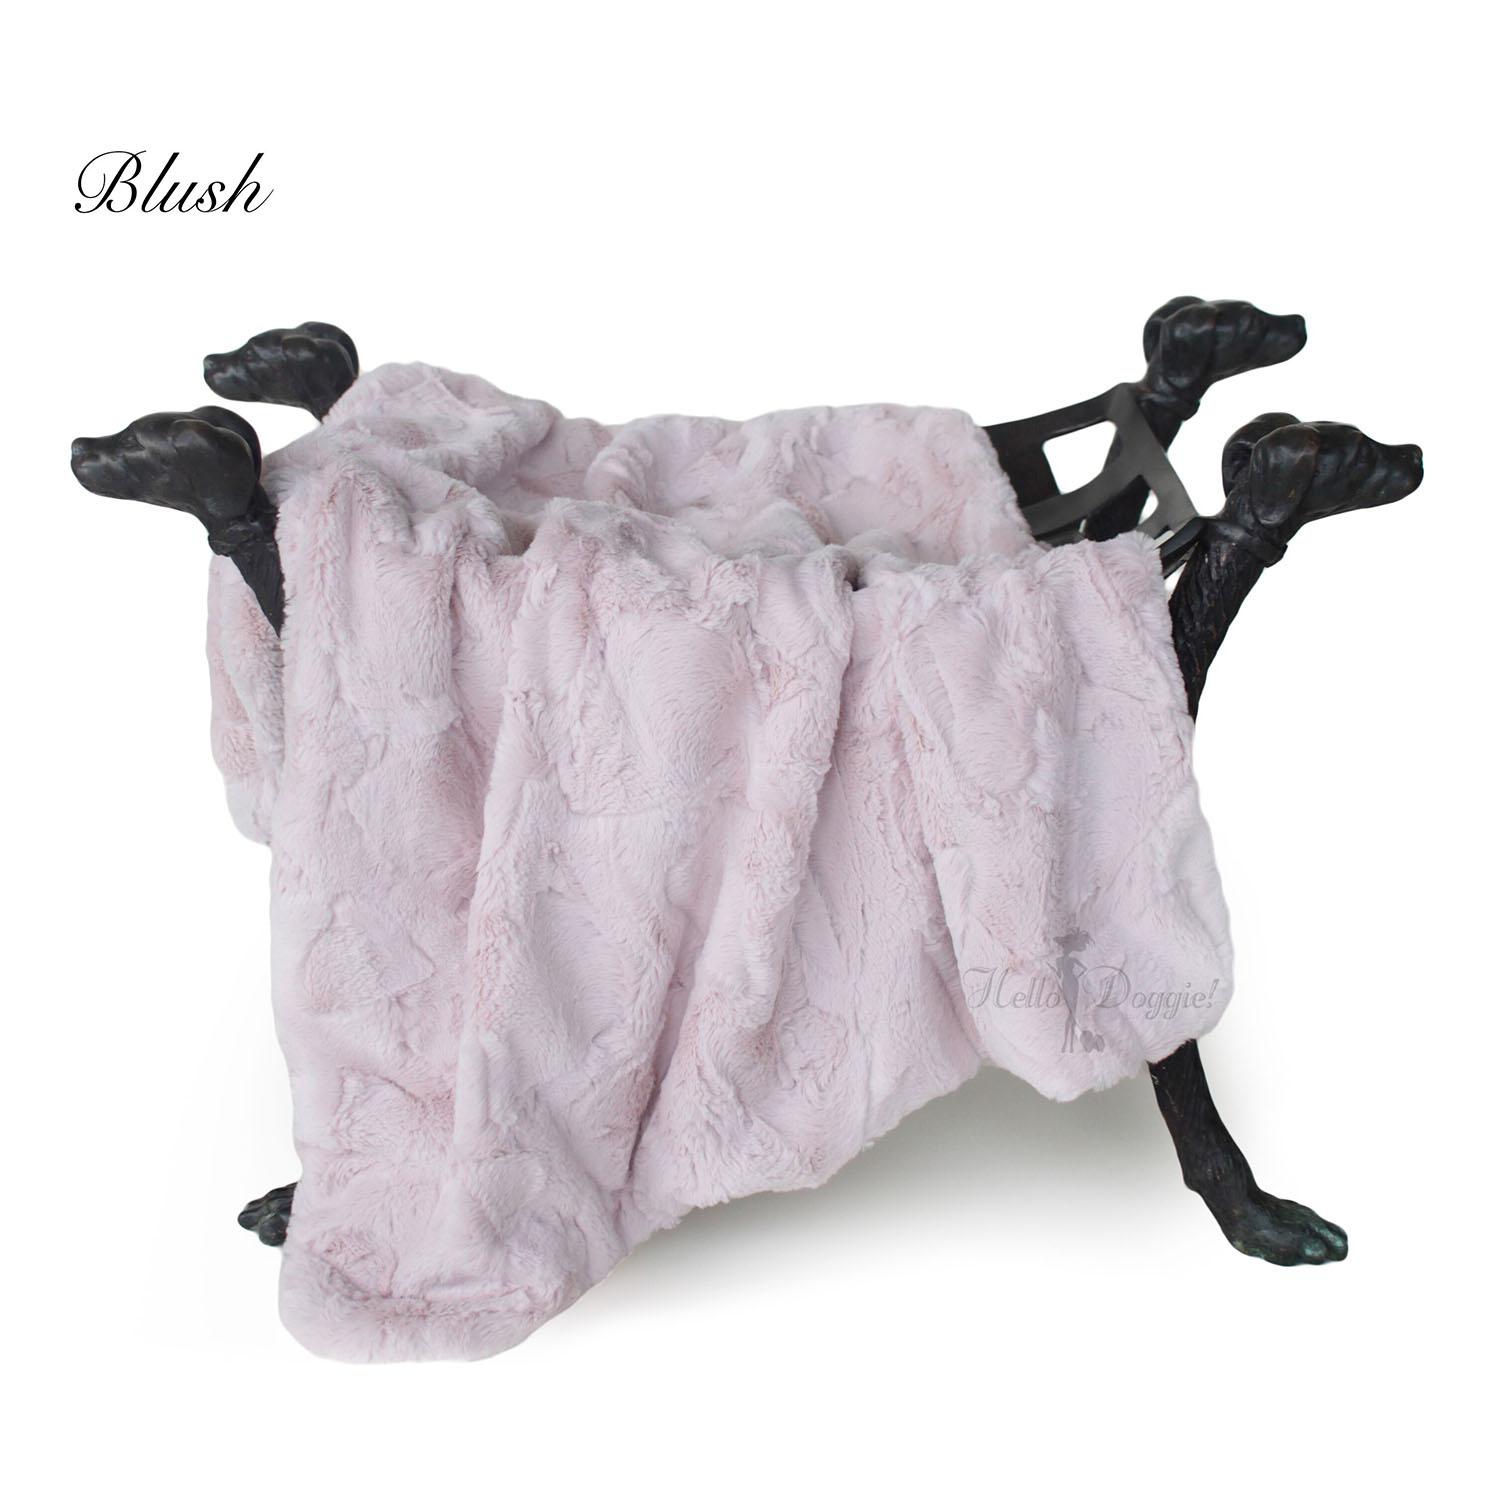 Hello Doggie Luxe Dog Blanket - Blush